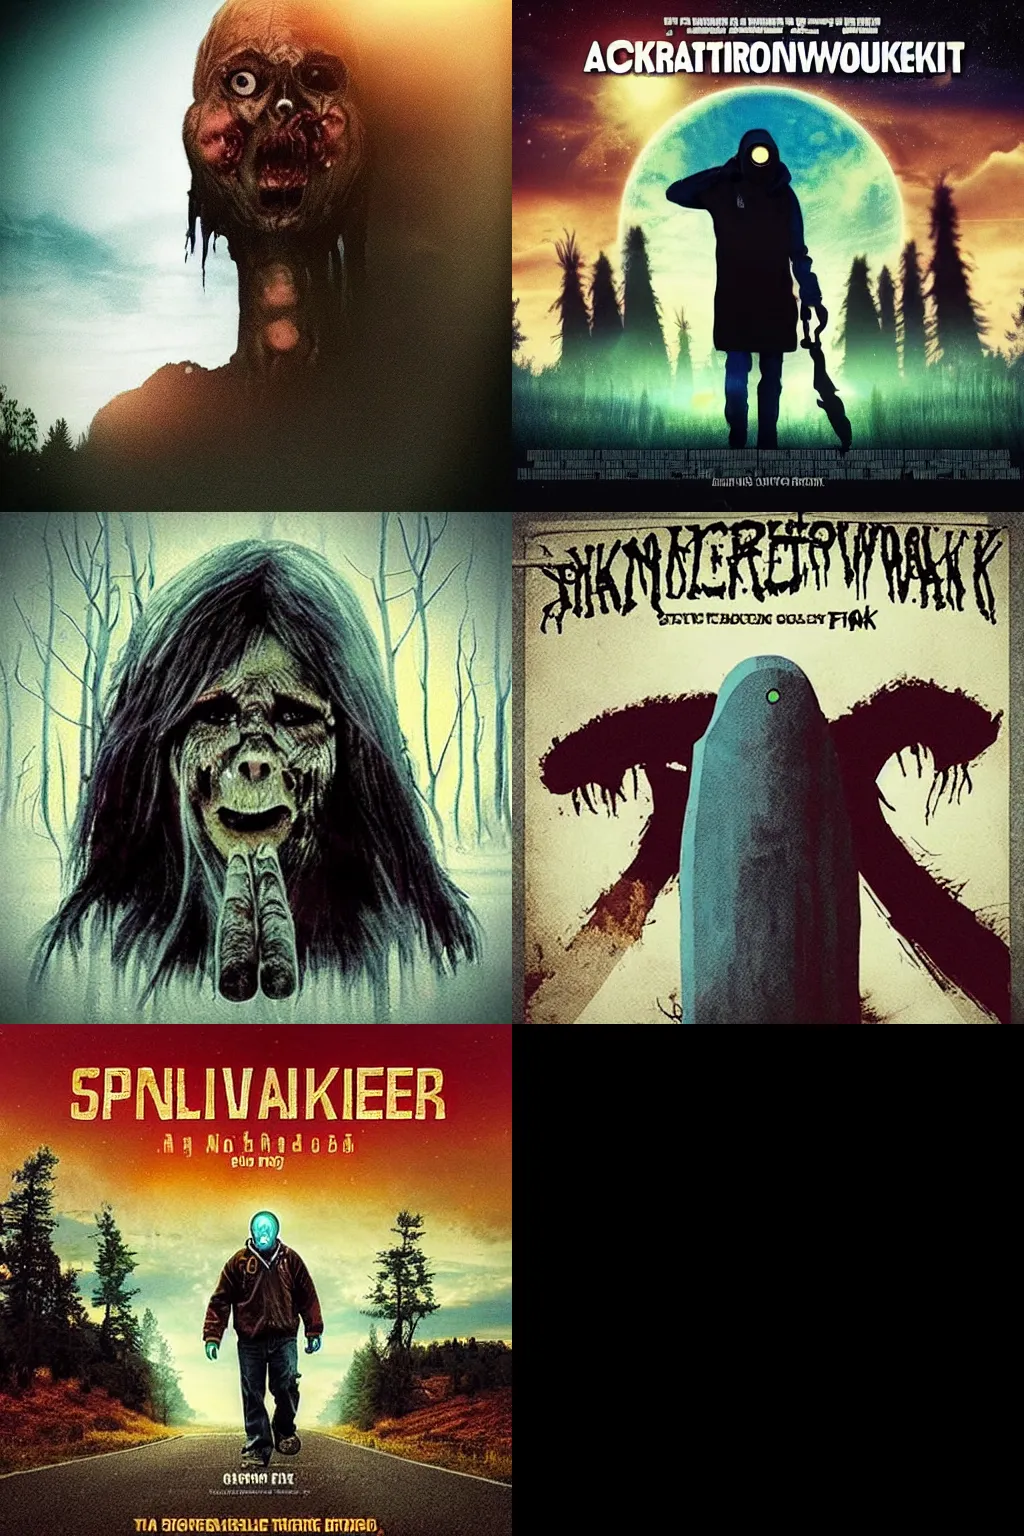 Prompt: “a horrifying skinwalker movie postser”